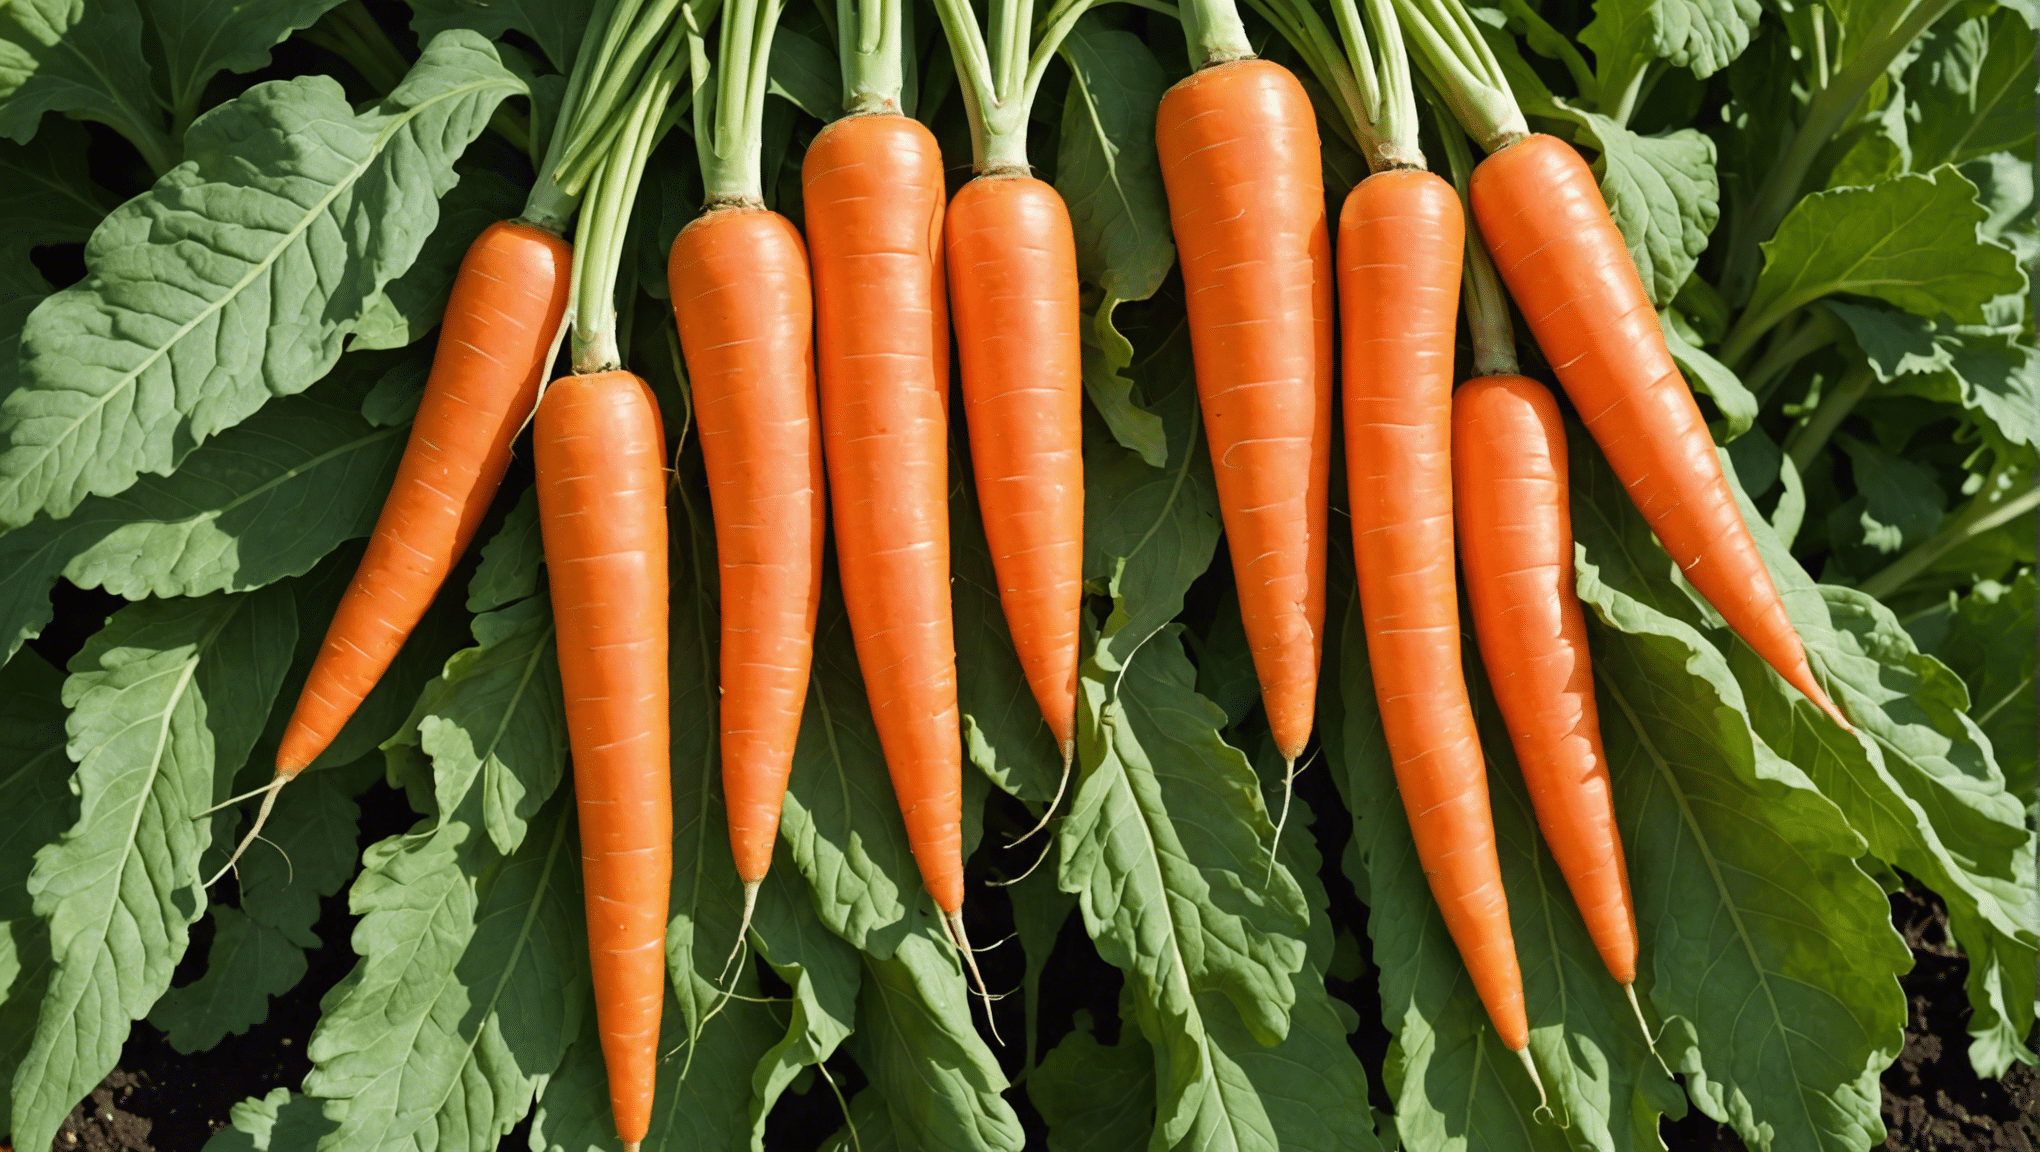 découvrez des astuces efficaces pour augmenter la production de carottes dans votre potager à une vitesse phénoménale.